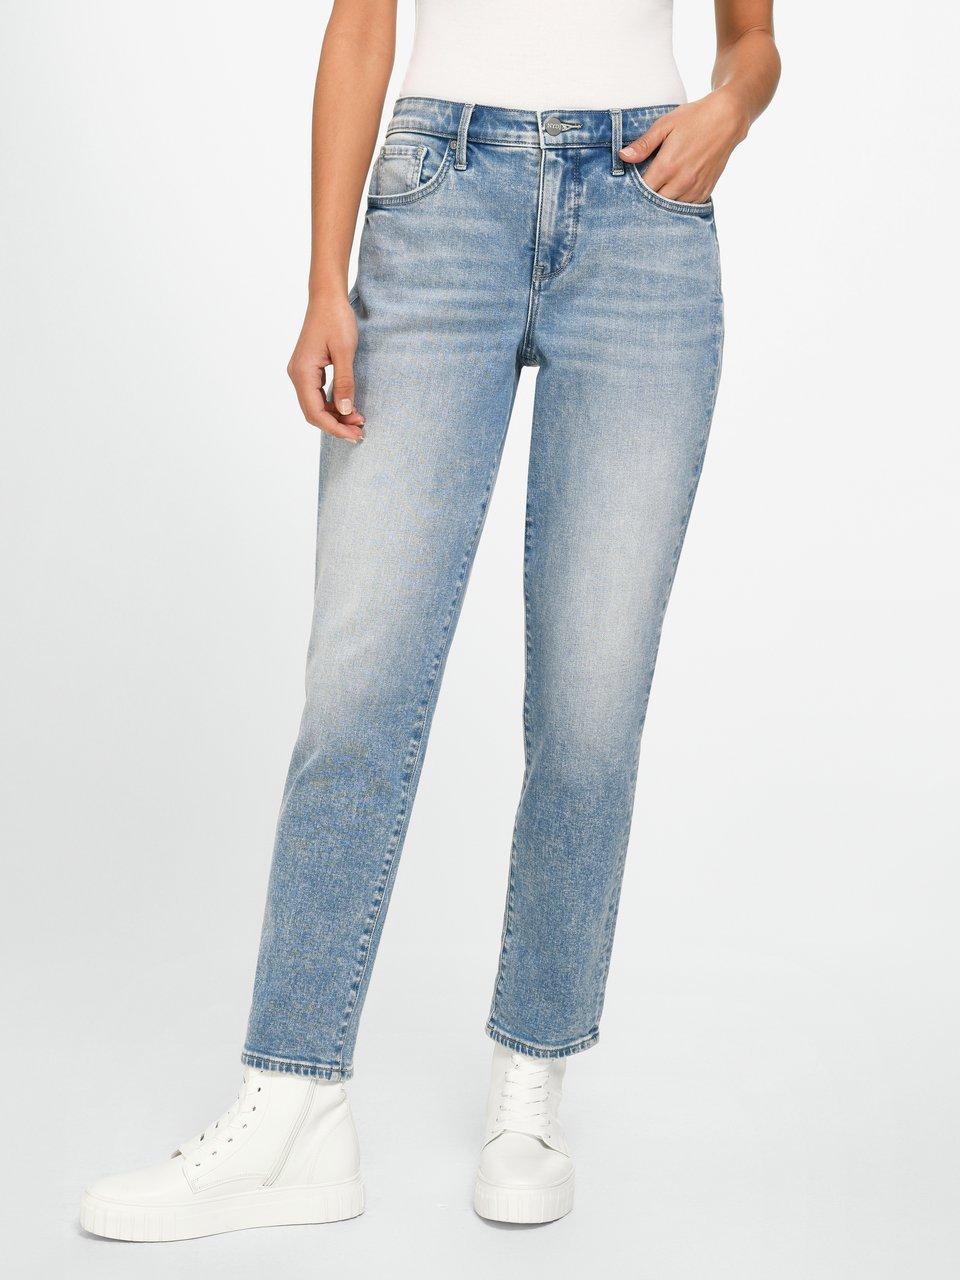 NYDJ - Jeans model Margot Girlfriend